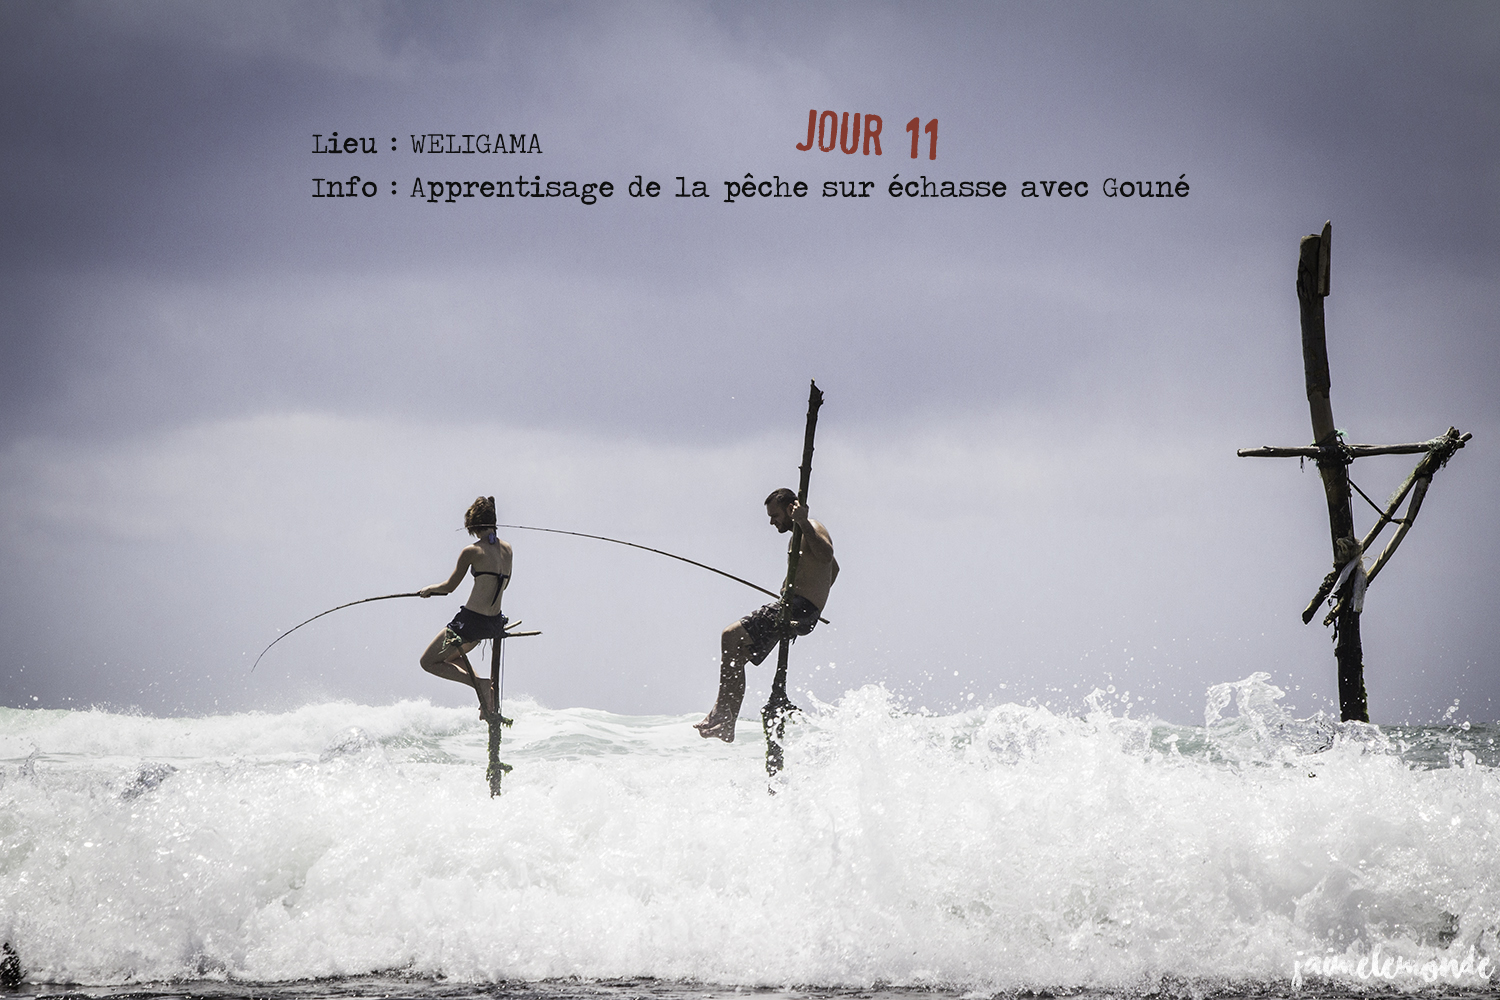 Voyage Sri Lanka - Itinéraire Jour 11 - 4 Weligama - Apprentissage de la pêche sur échasse - ©jaimelemonde